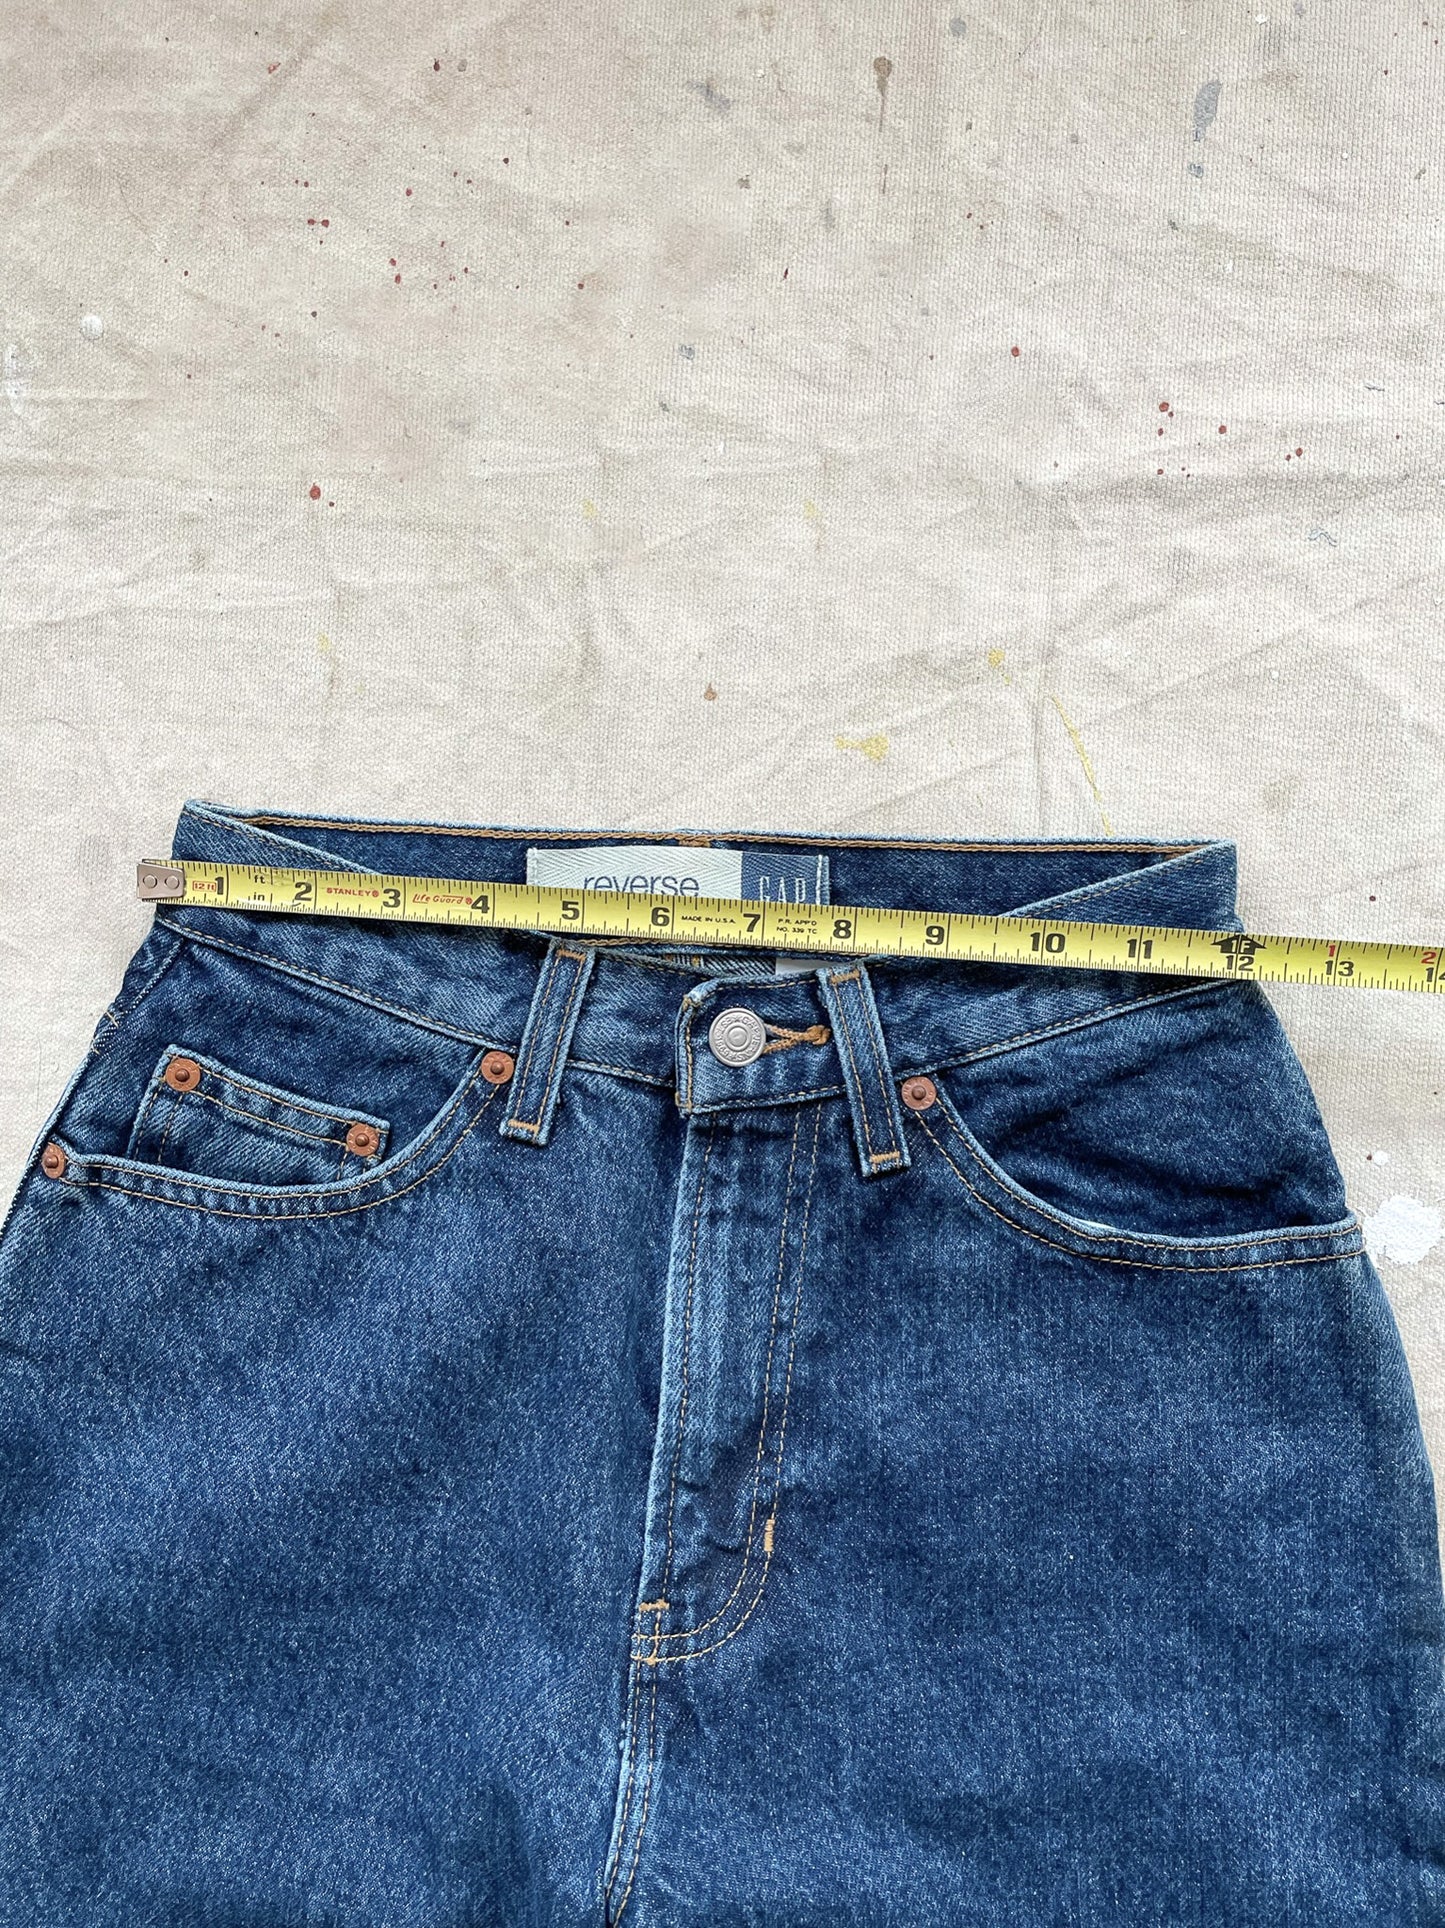 90's GAP Reverse Fit Jeans—[23x35]